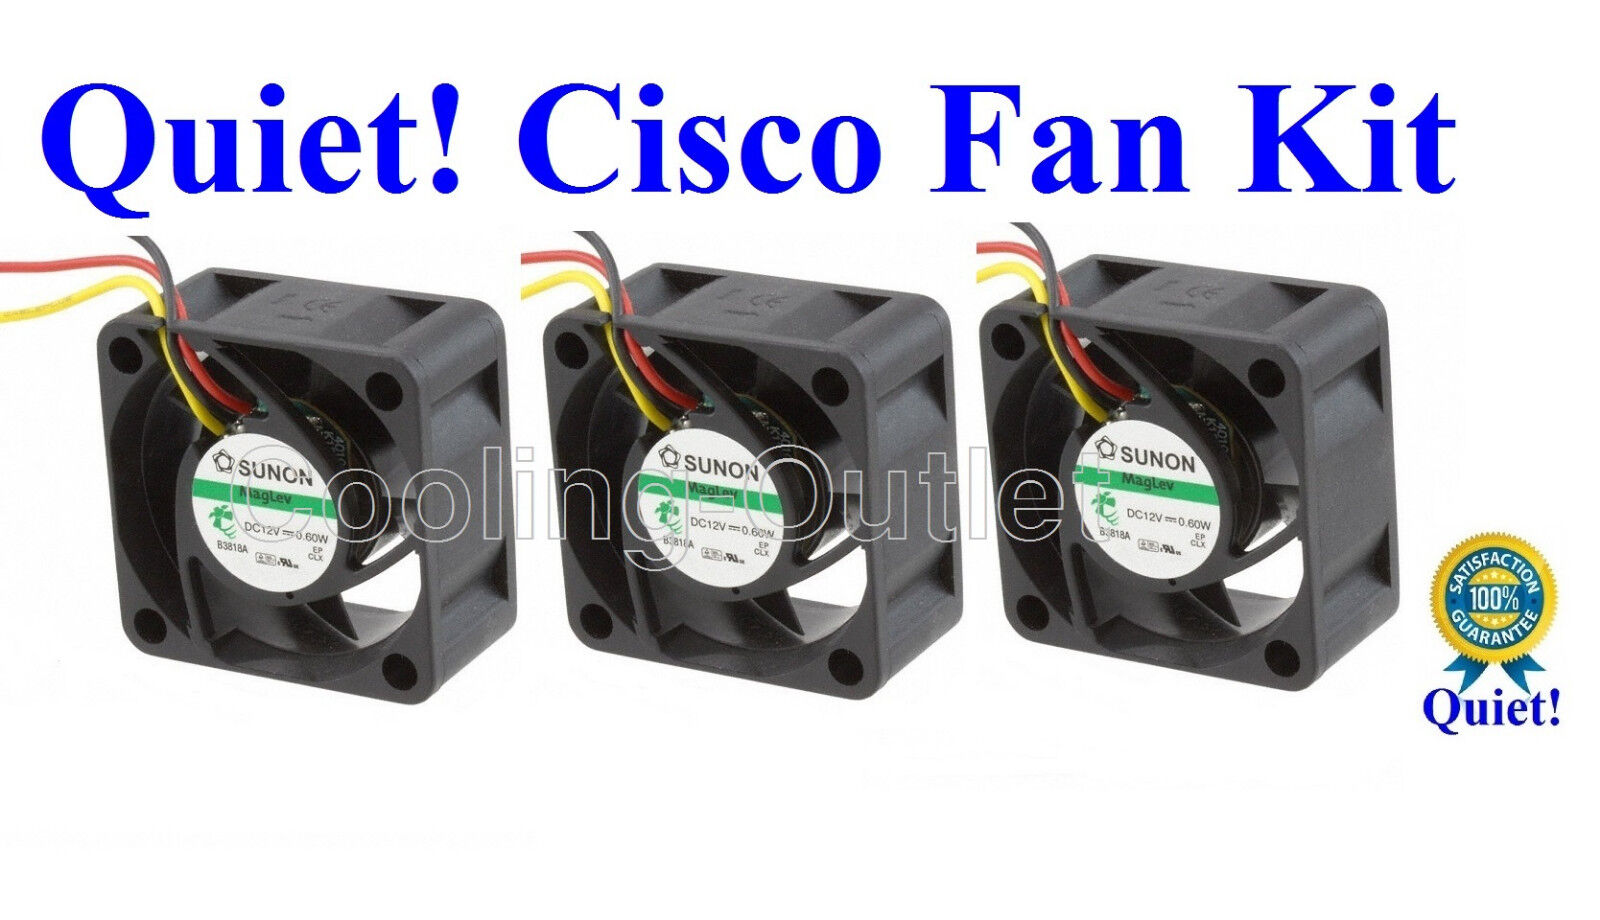 Super Quiet Cisco SG500X-24P FAN KIT, 3x new Sunon MagLev fans 12~18dBA Noise